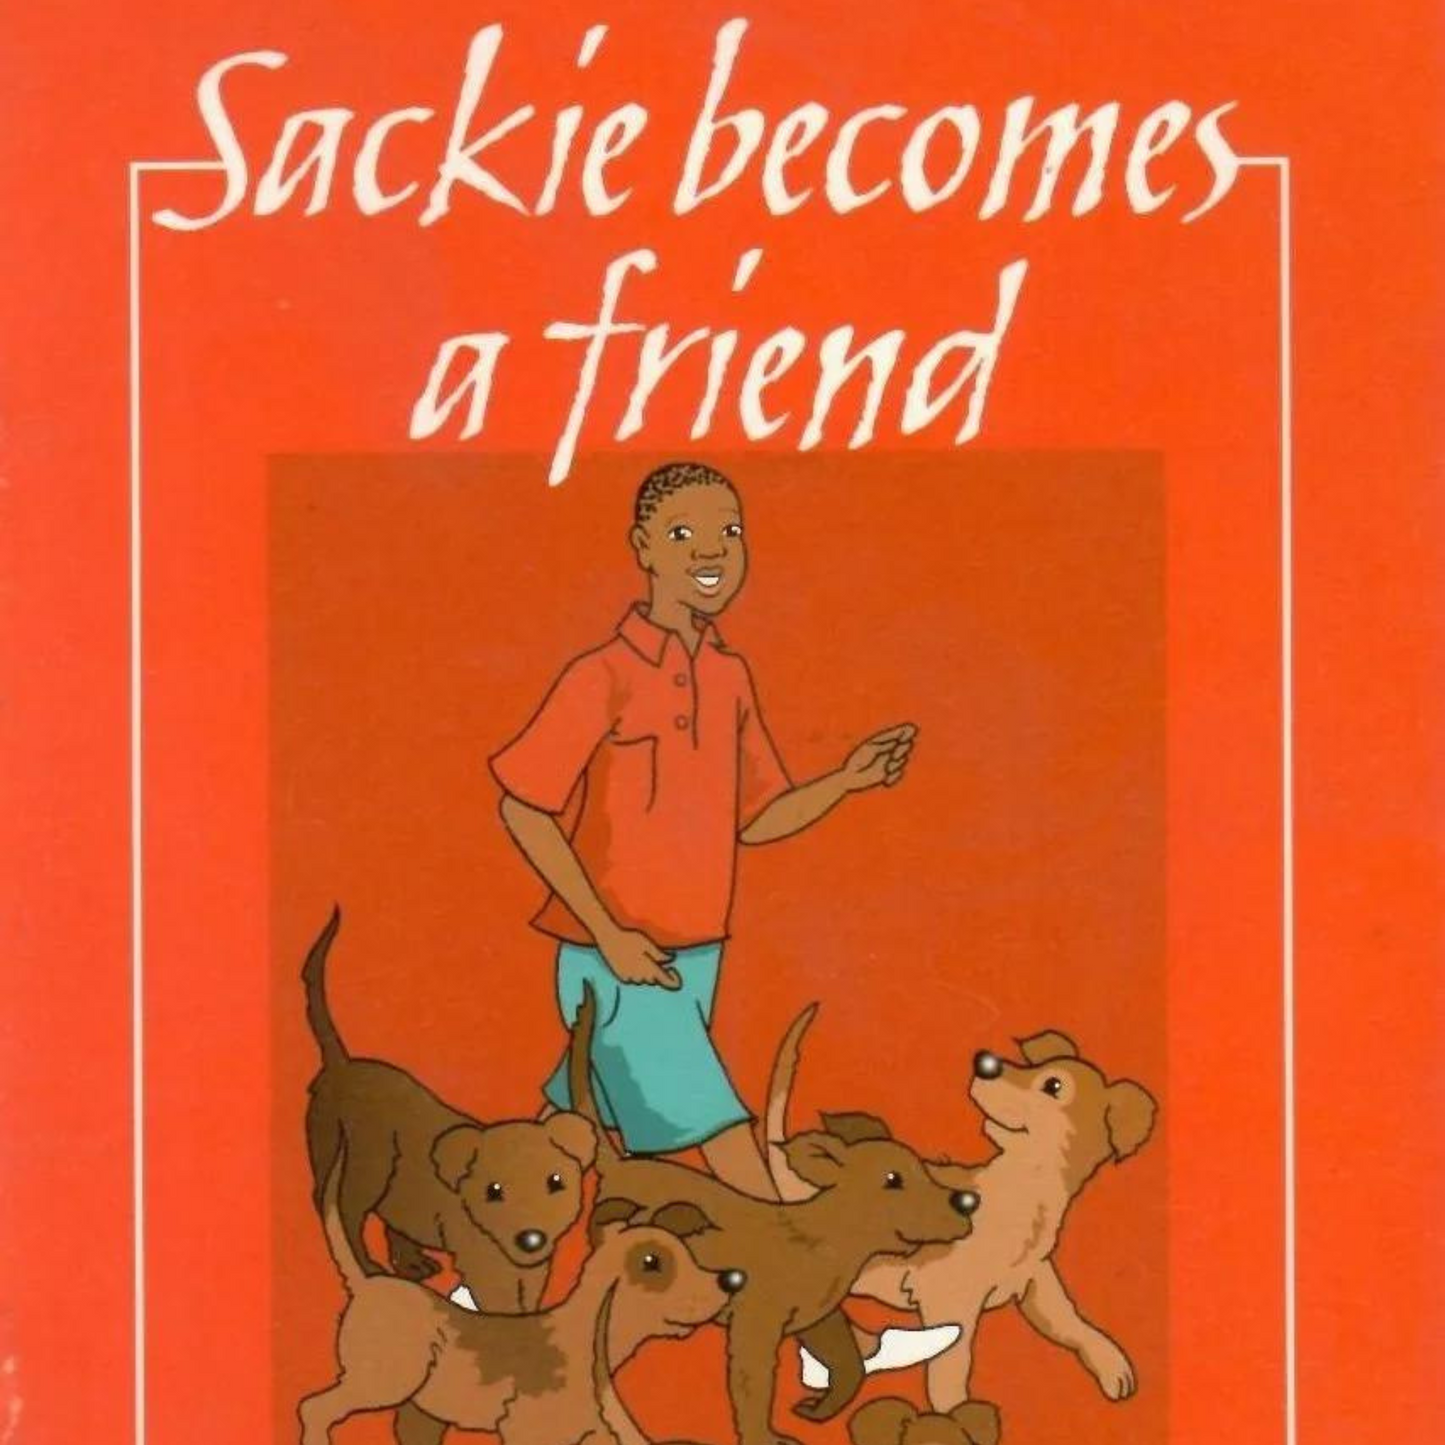 Sackie becomes a friend